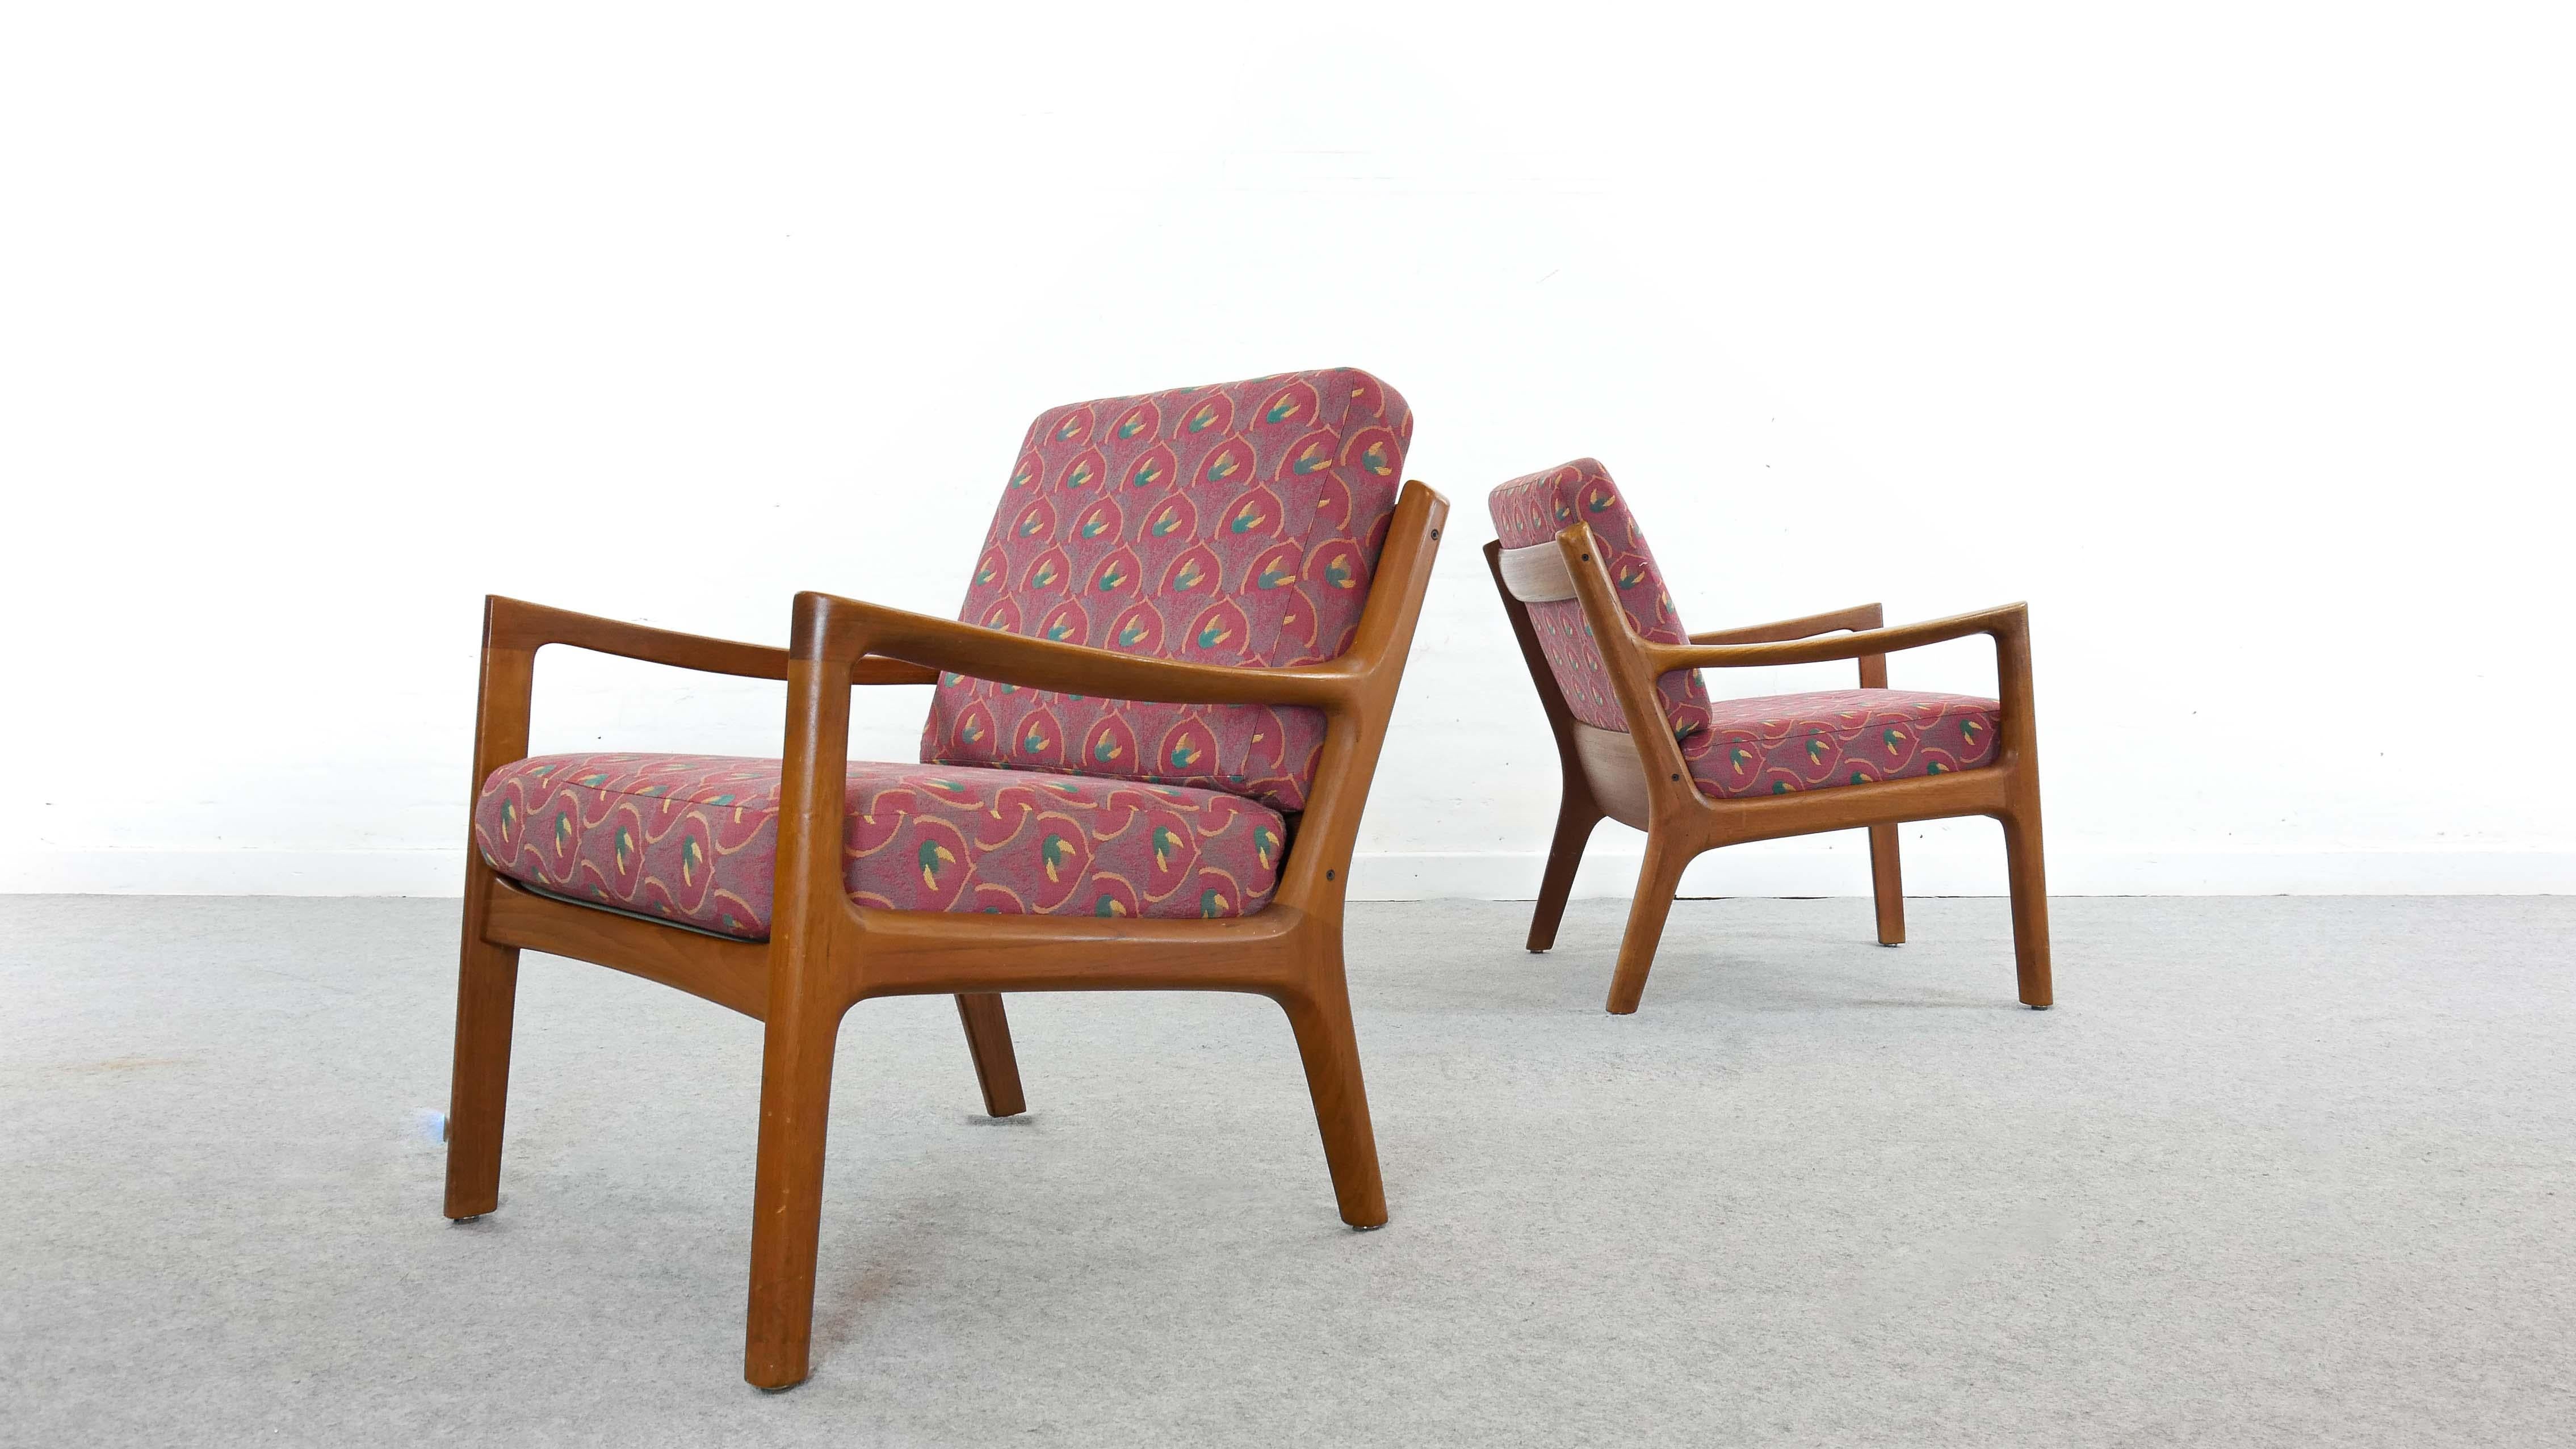 Ensemble de deux fauteuils Senator scandinaves en teck, conçus par Ole Wanscher et fabriqués par France and Son, Danemark. Les coussins ont été retapissés avec des tissus de JAB Anstötz.
Étiquette du fabricant en dessous.

  